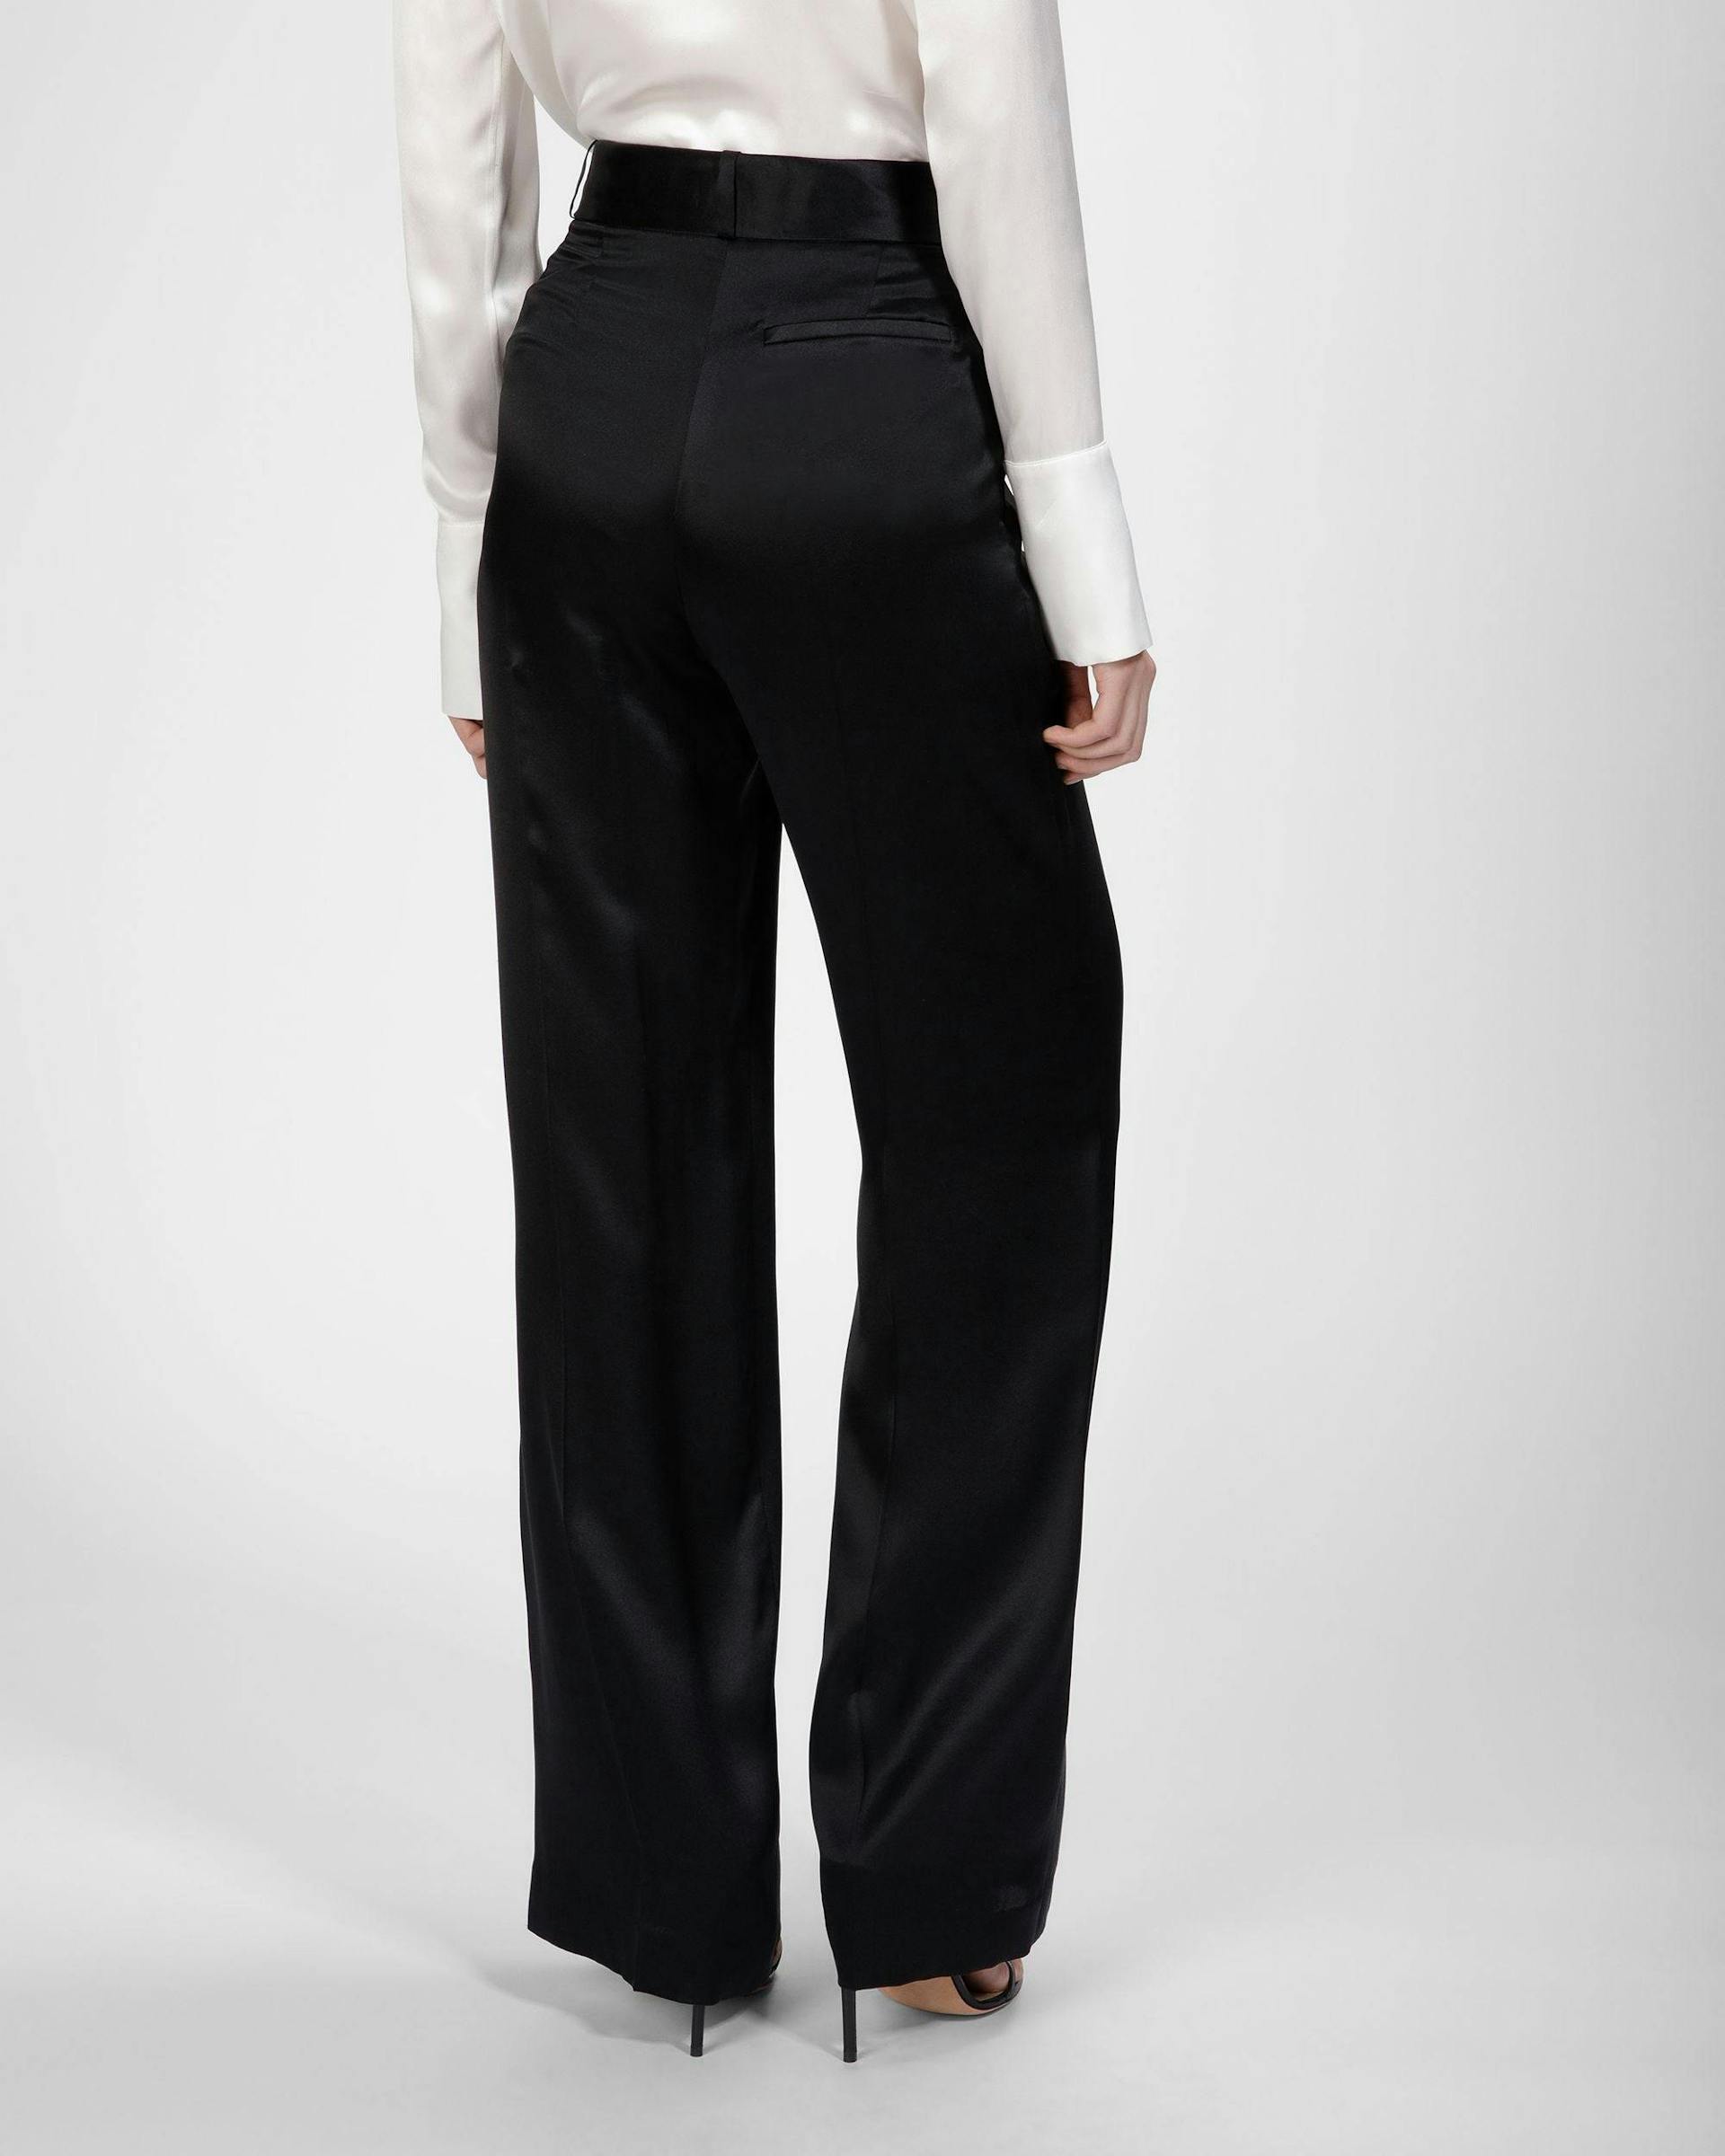 Silk Pants In Black - Women's - Bally - 06